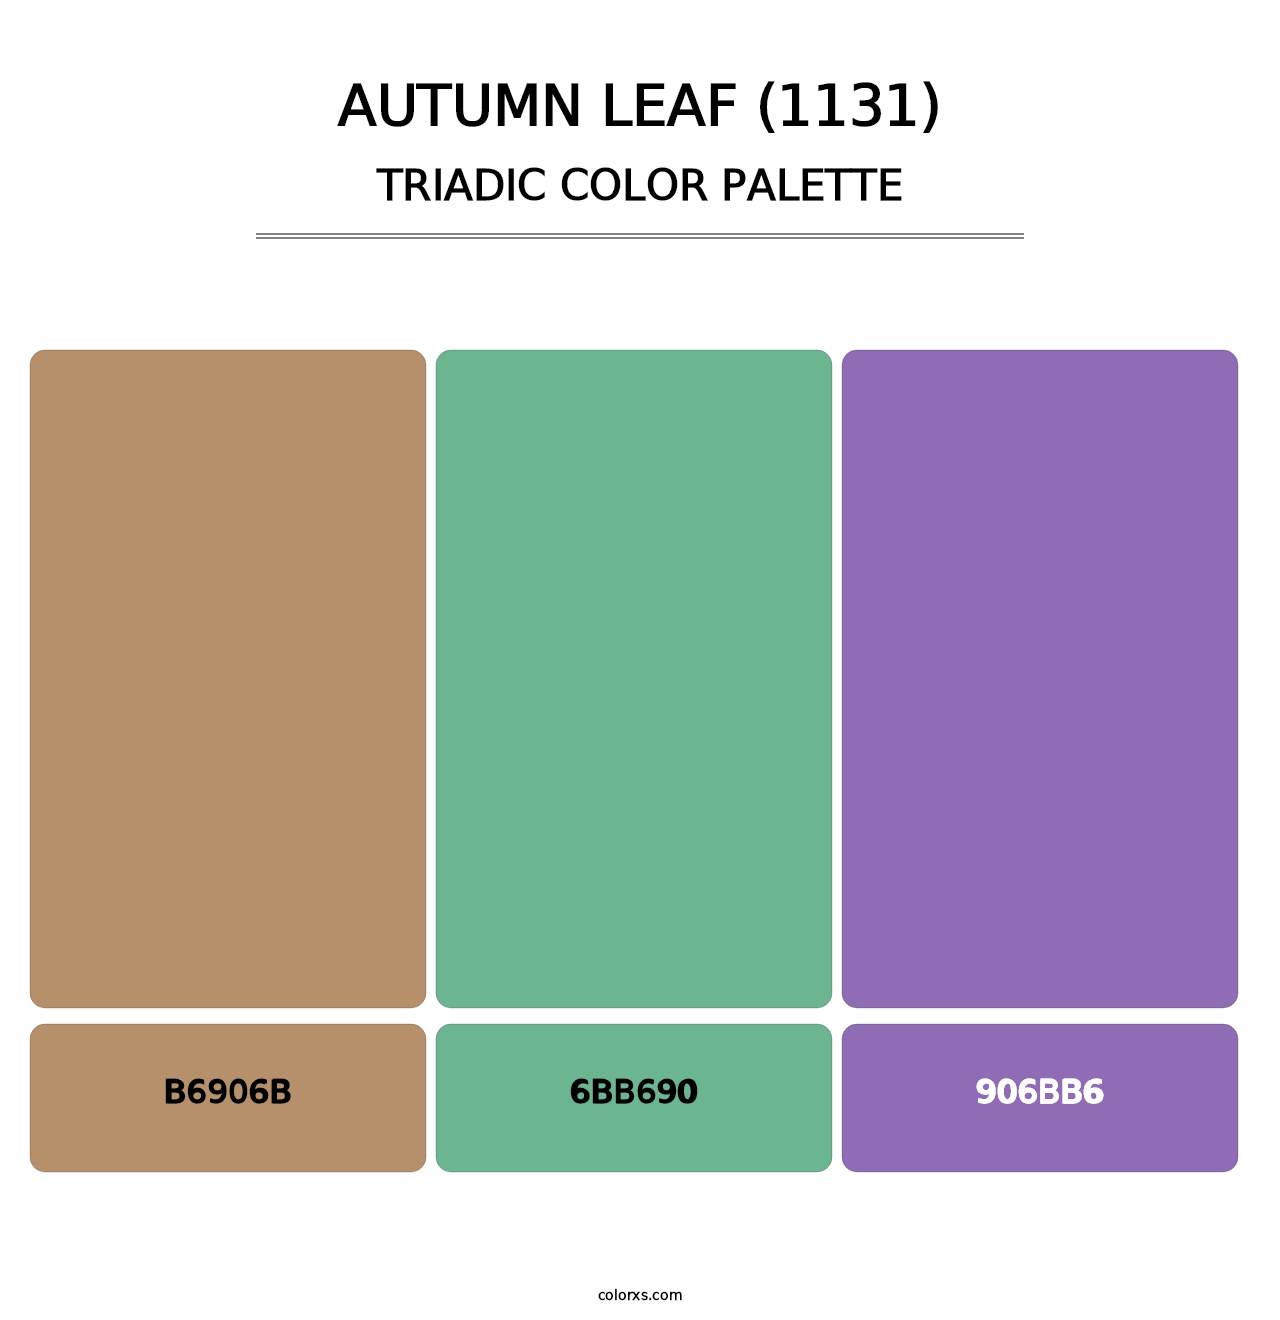 Autumn Leaf (1131) - Triadic Color Palette